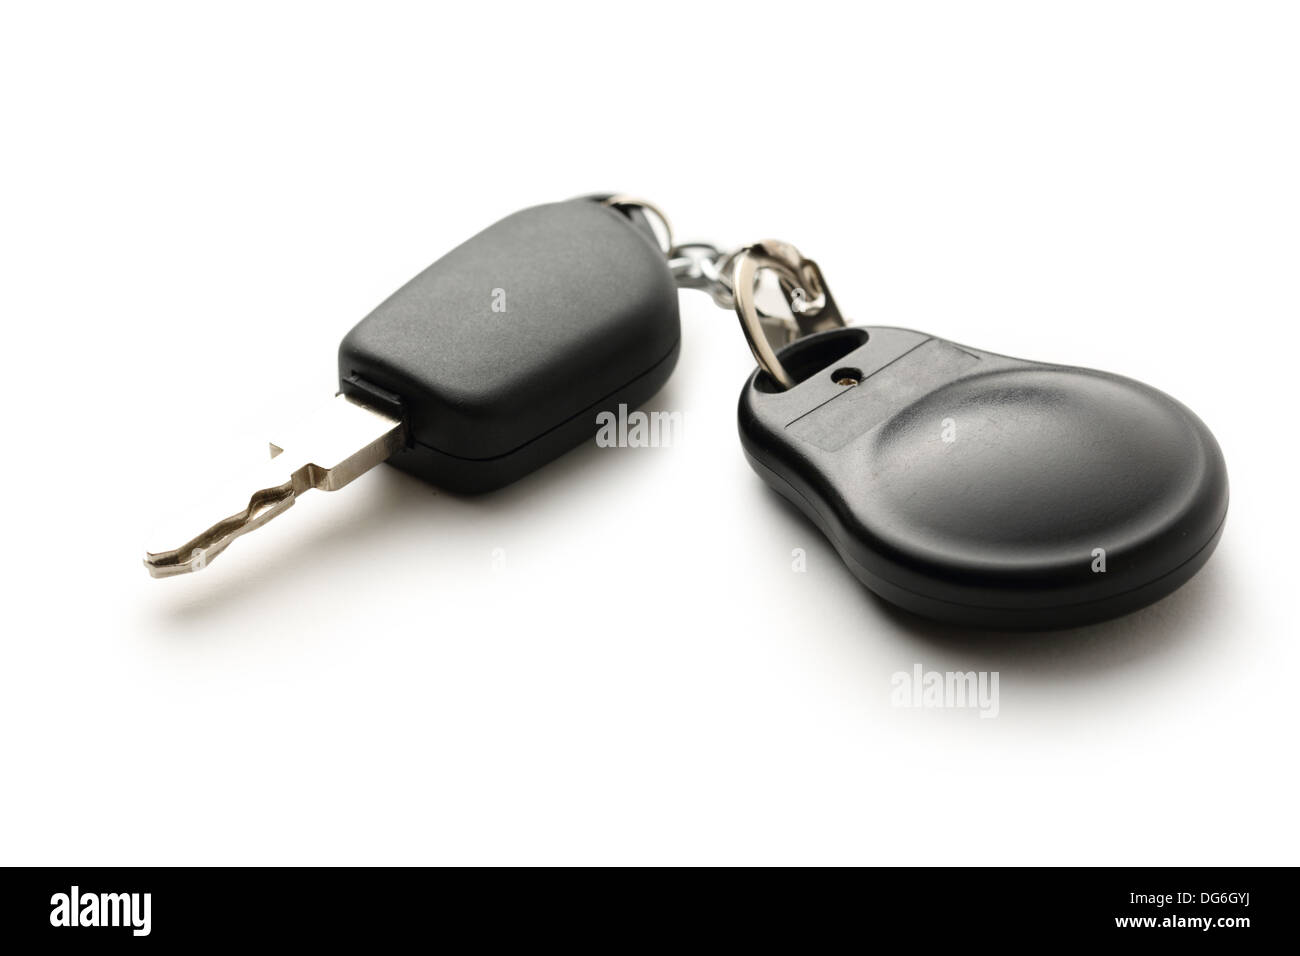 Car remote key on white Stock Photo